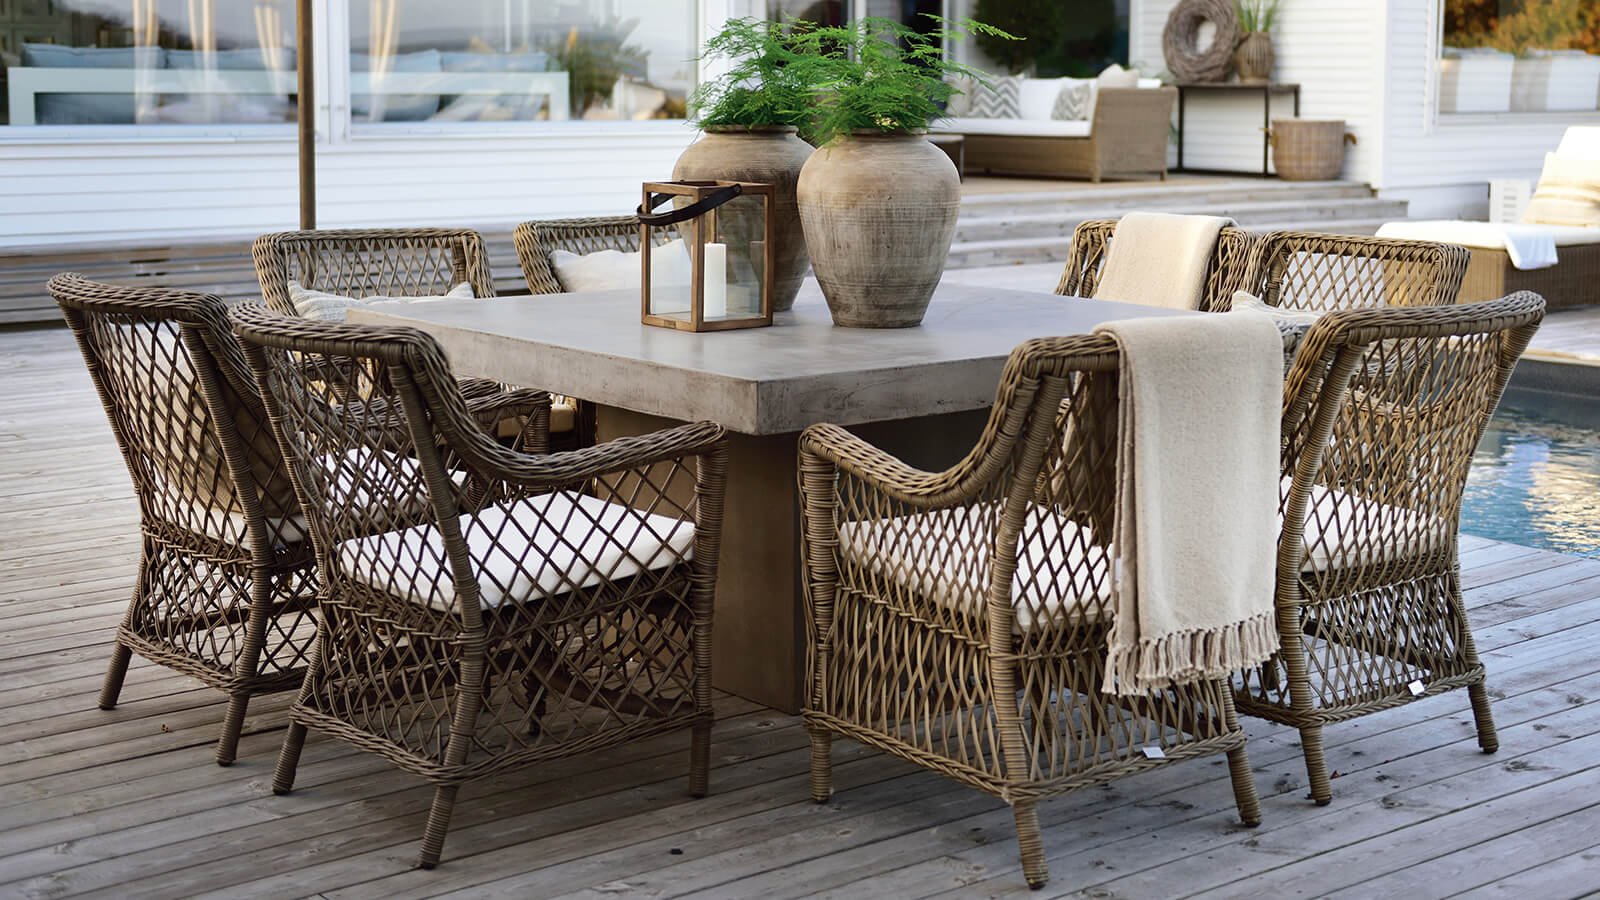 Garden furniture sets - Buy a furniture set online at Newport